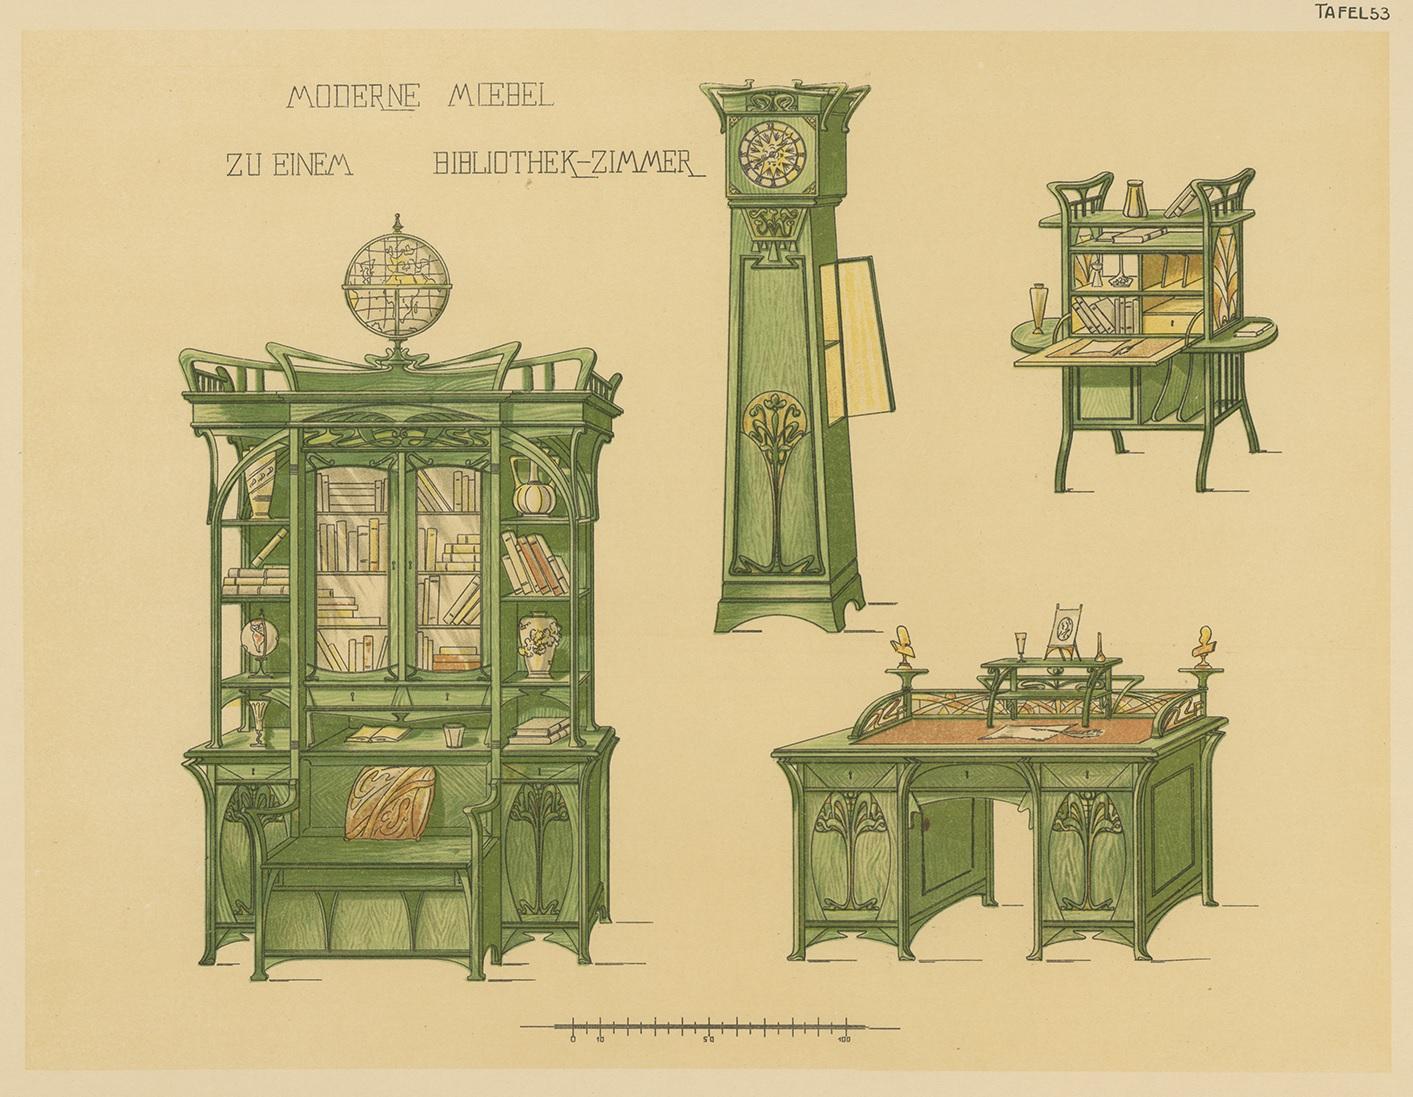 Antiker Druck mit dem Titel 'Moderne Moebel zu einem Bibliothek-Zimmer'. Lithographie von Bibliotheksmöbeln. Dieser Druck stammt aus 